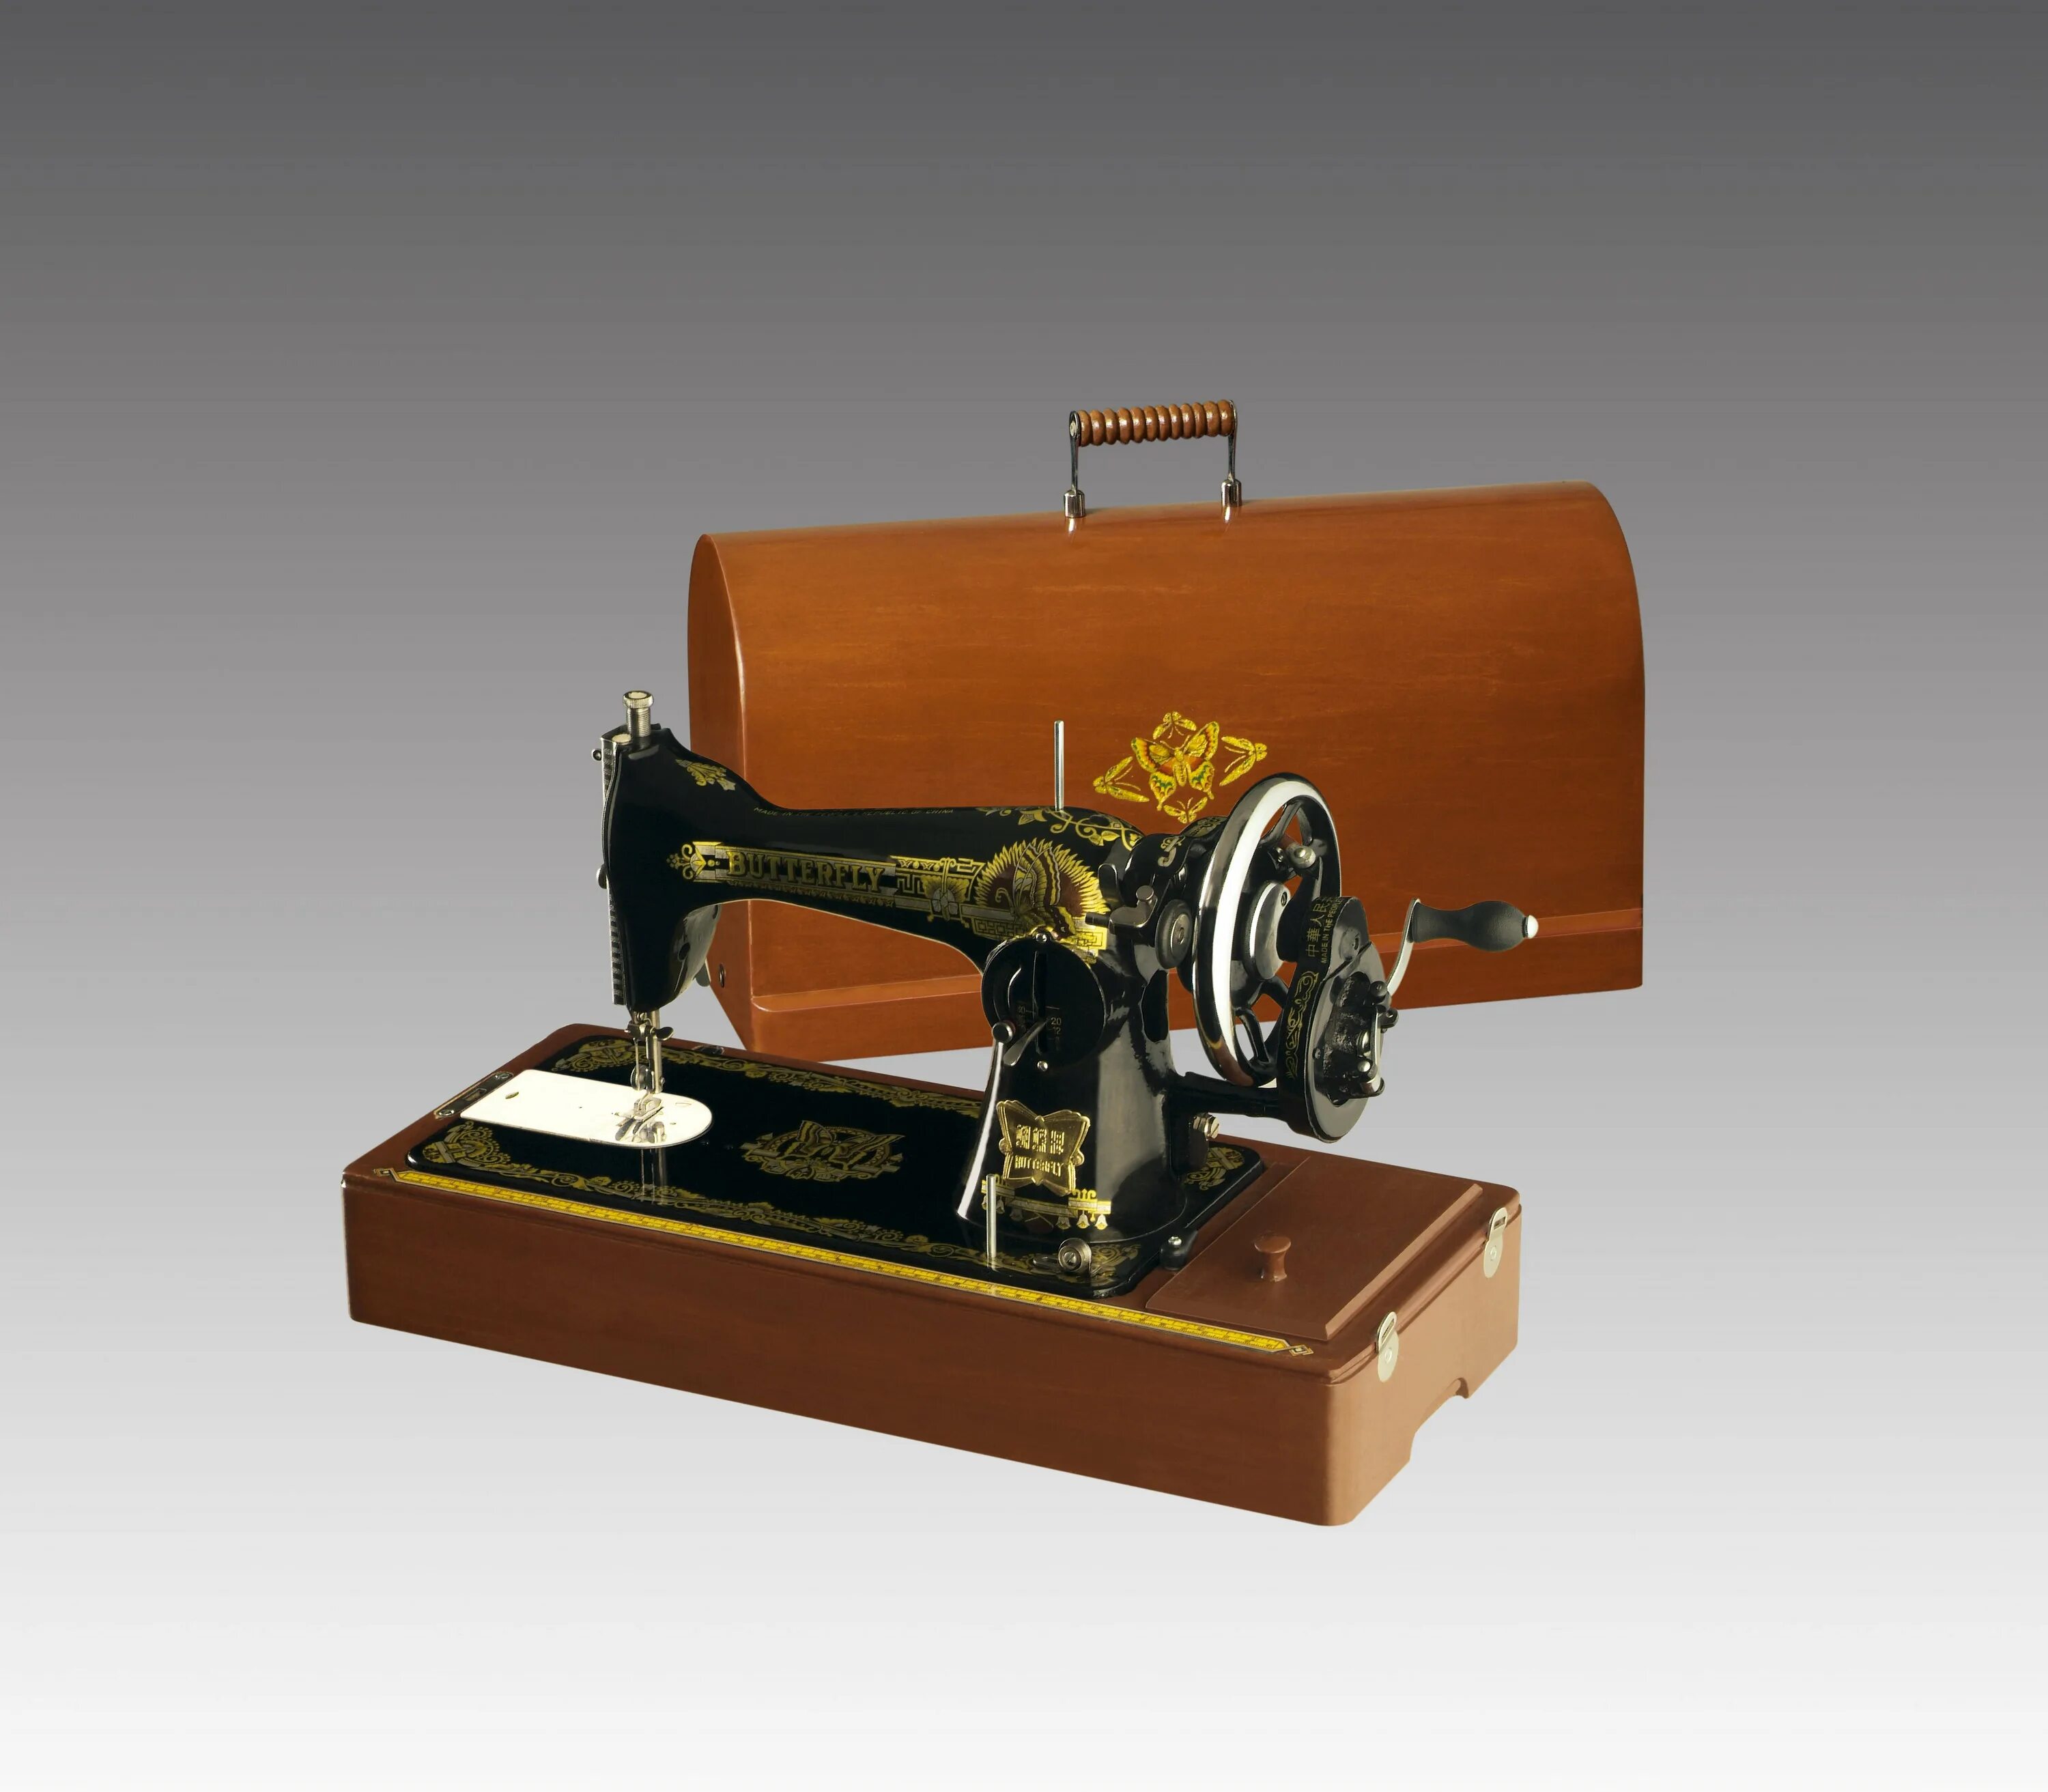 Машинка с ручным приводом. Швейная машинка Butterfly jg6001. Швейная машинка Butterfly 1958г. Китайская швейная машинка Баттерфляй. Баттерфляй швейная машинка 1956.